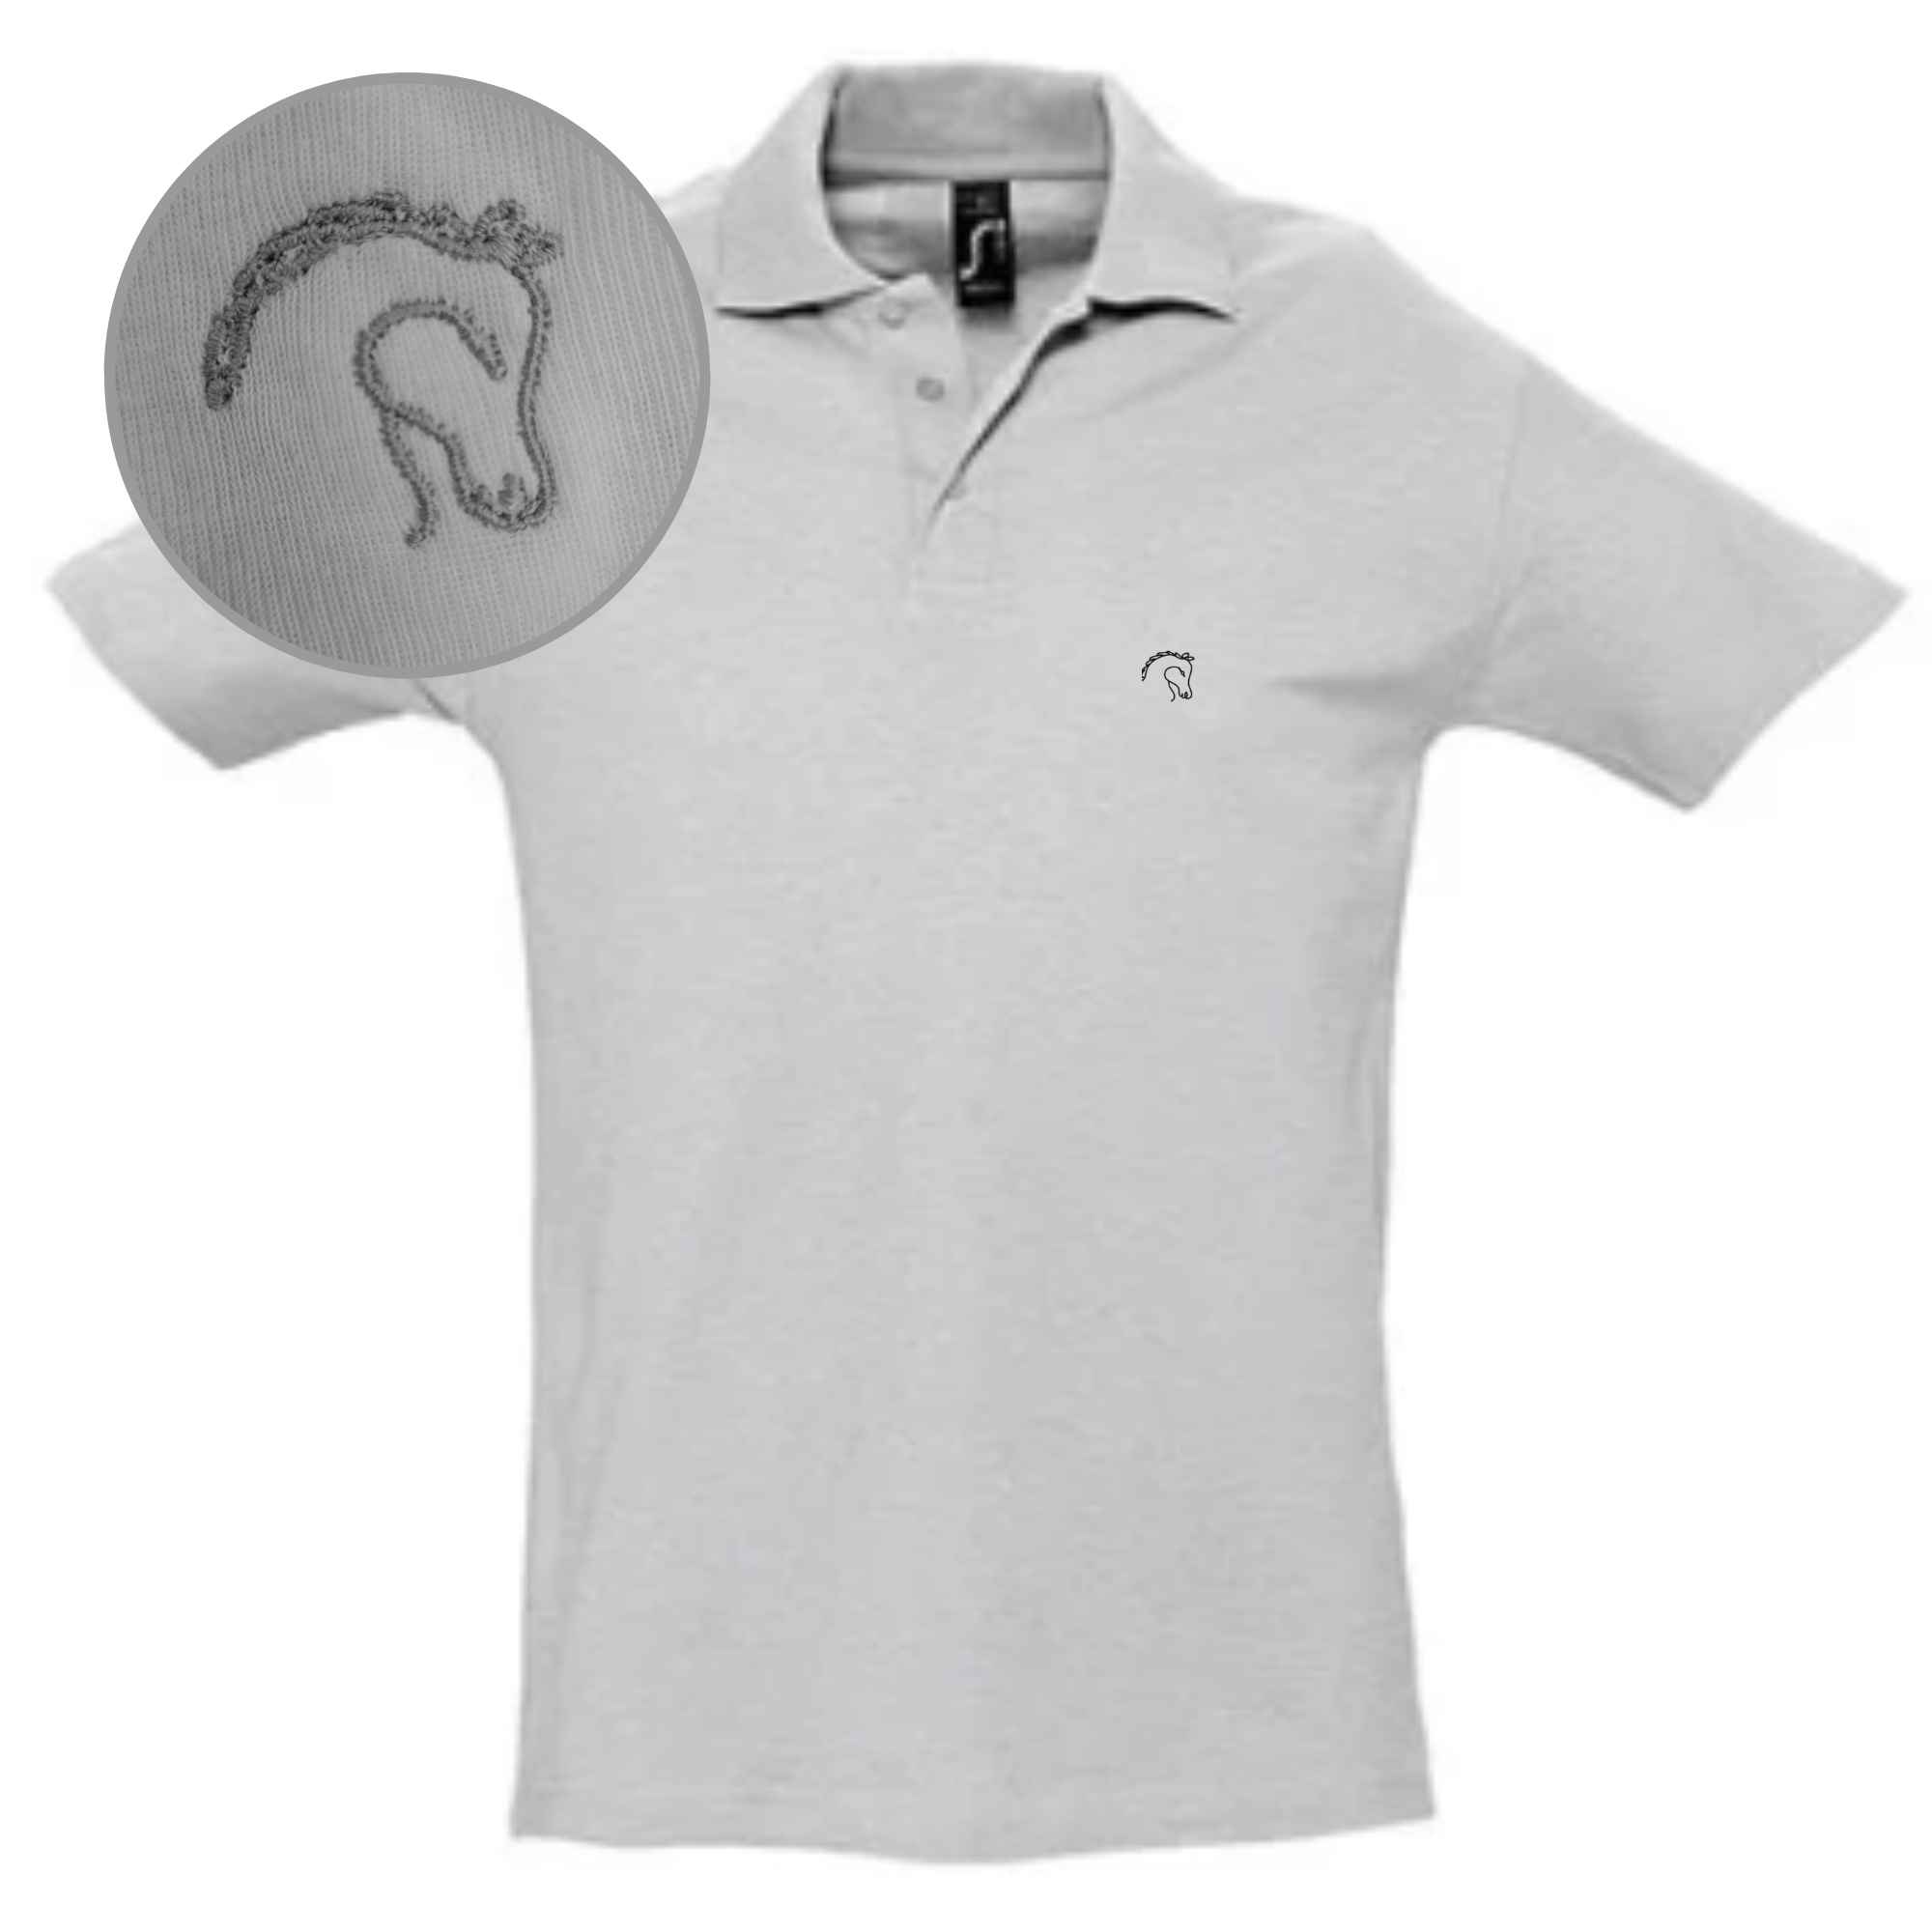 Hochwertiges Poloshirt mit Pferdemotiv bestickt auf linke Brust